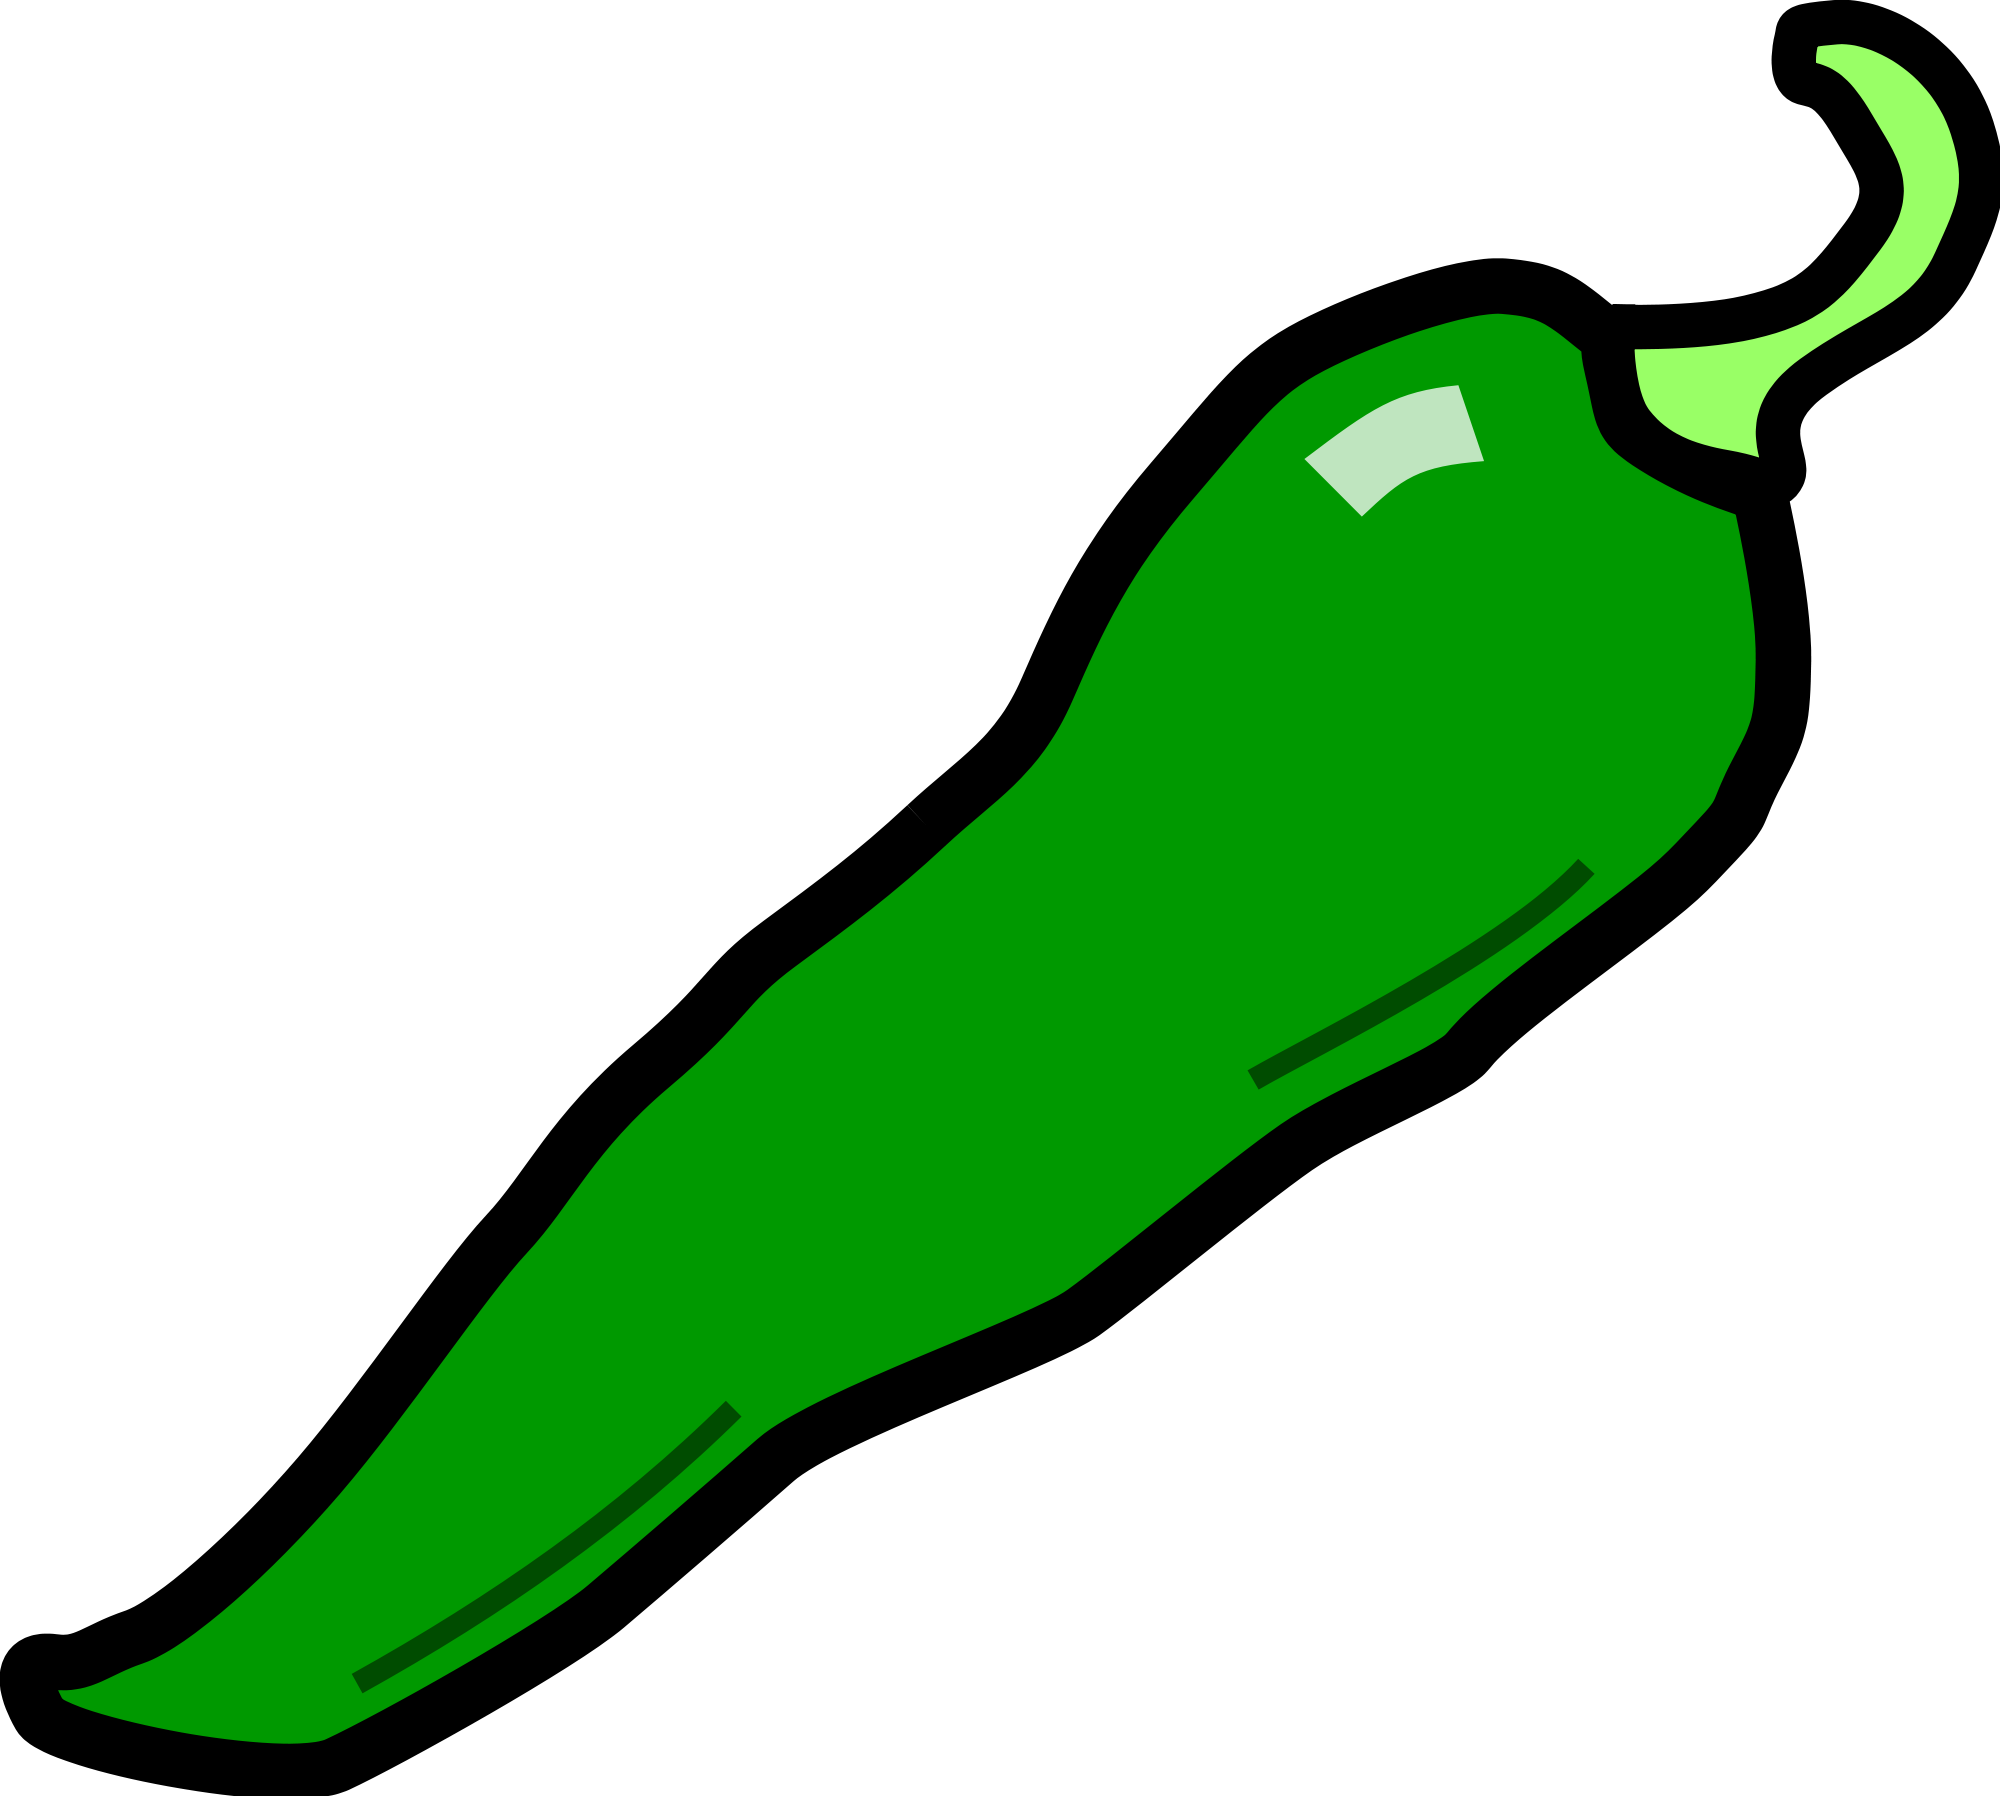 green chili clipart - photo #3